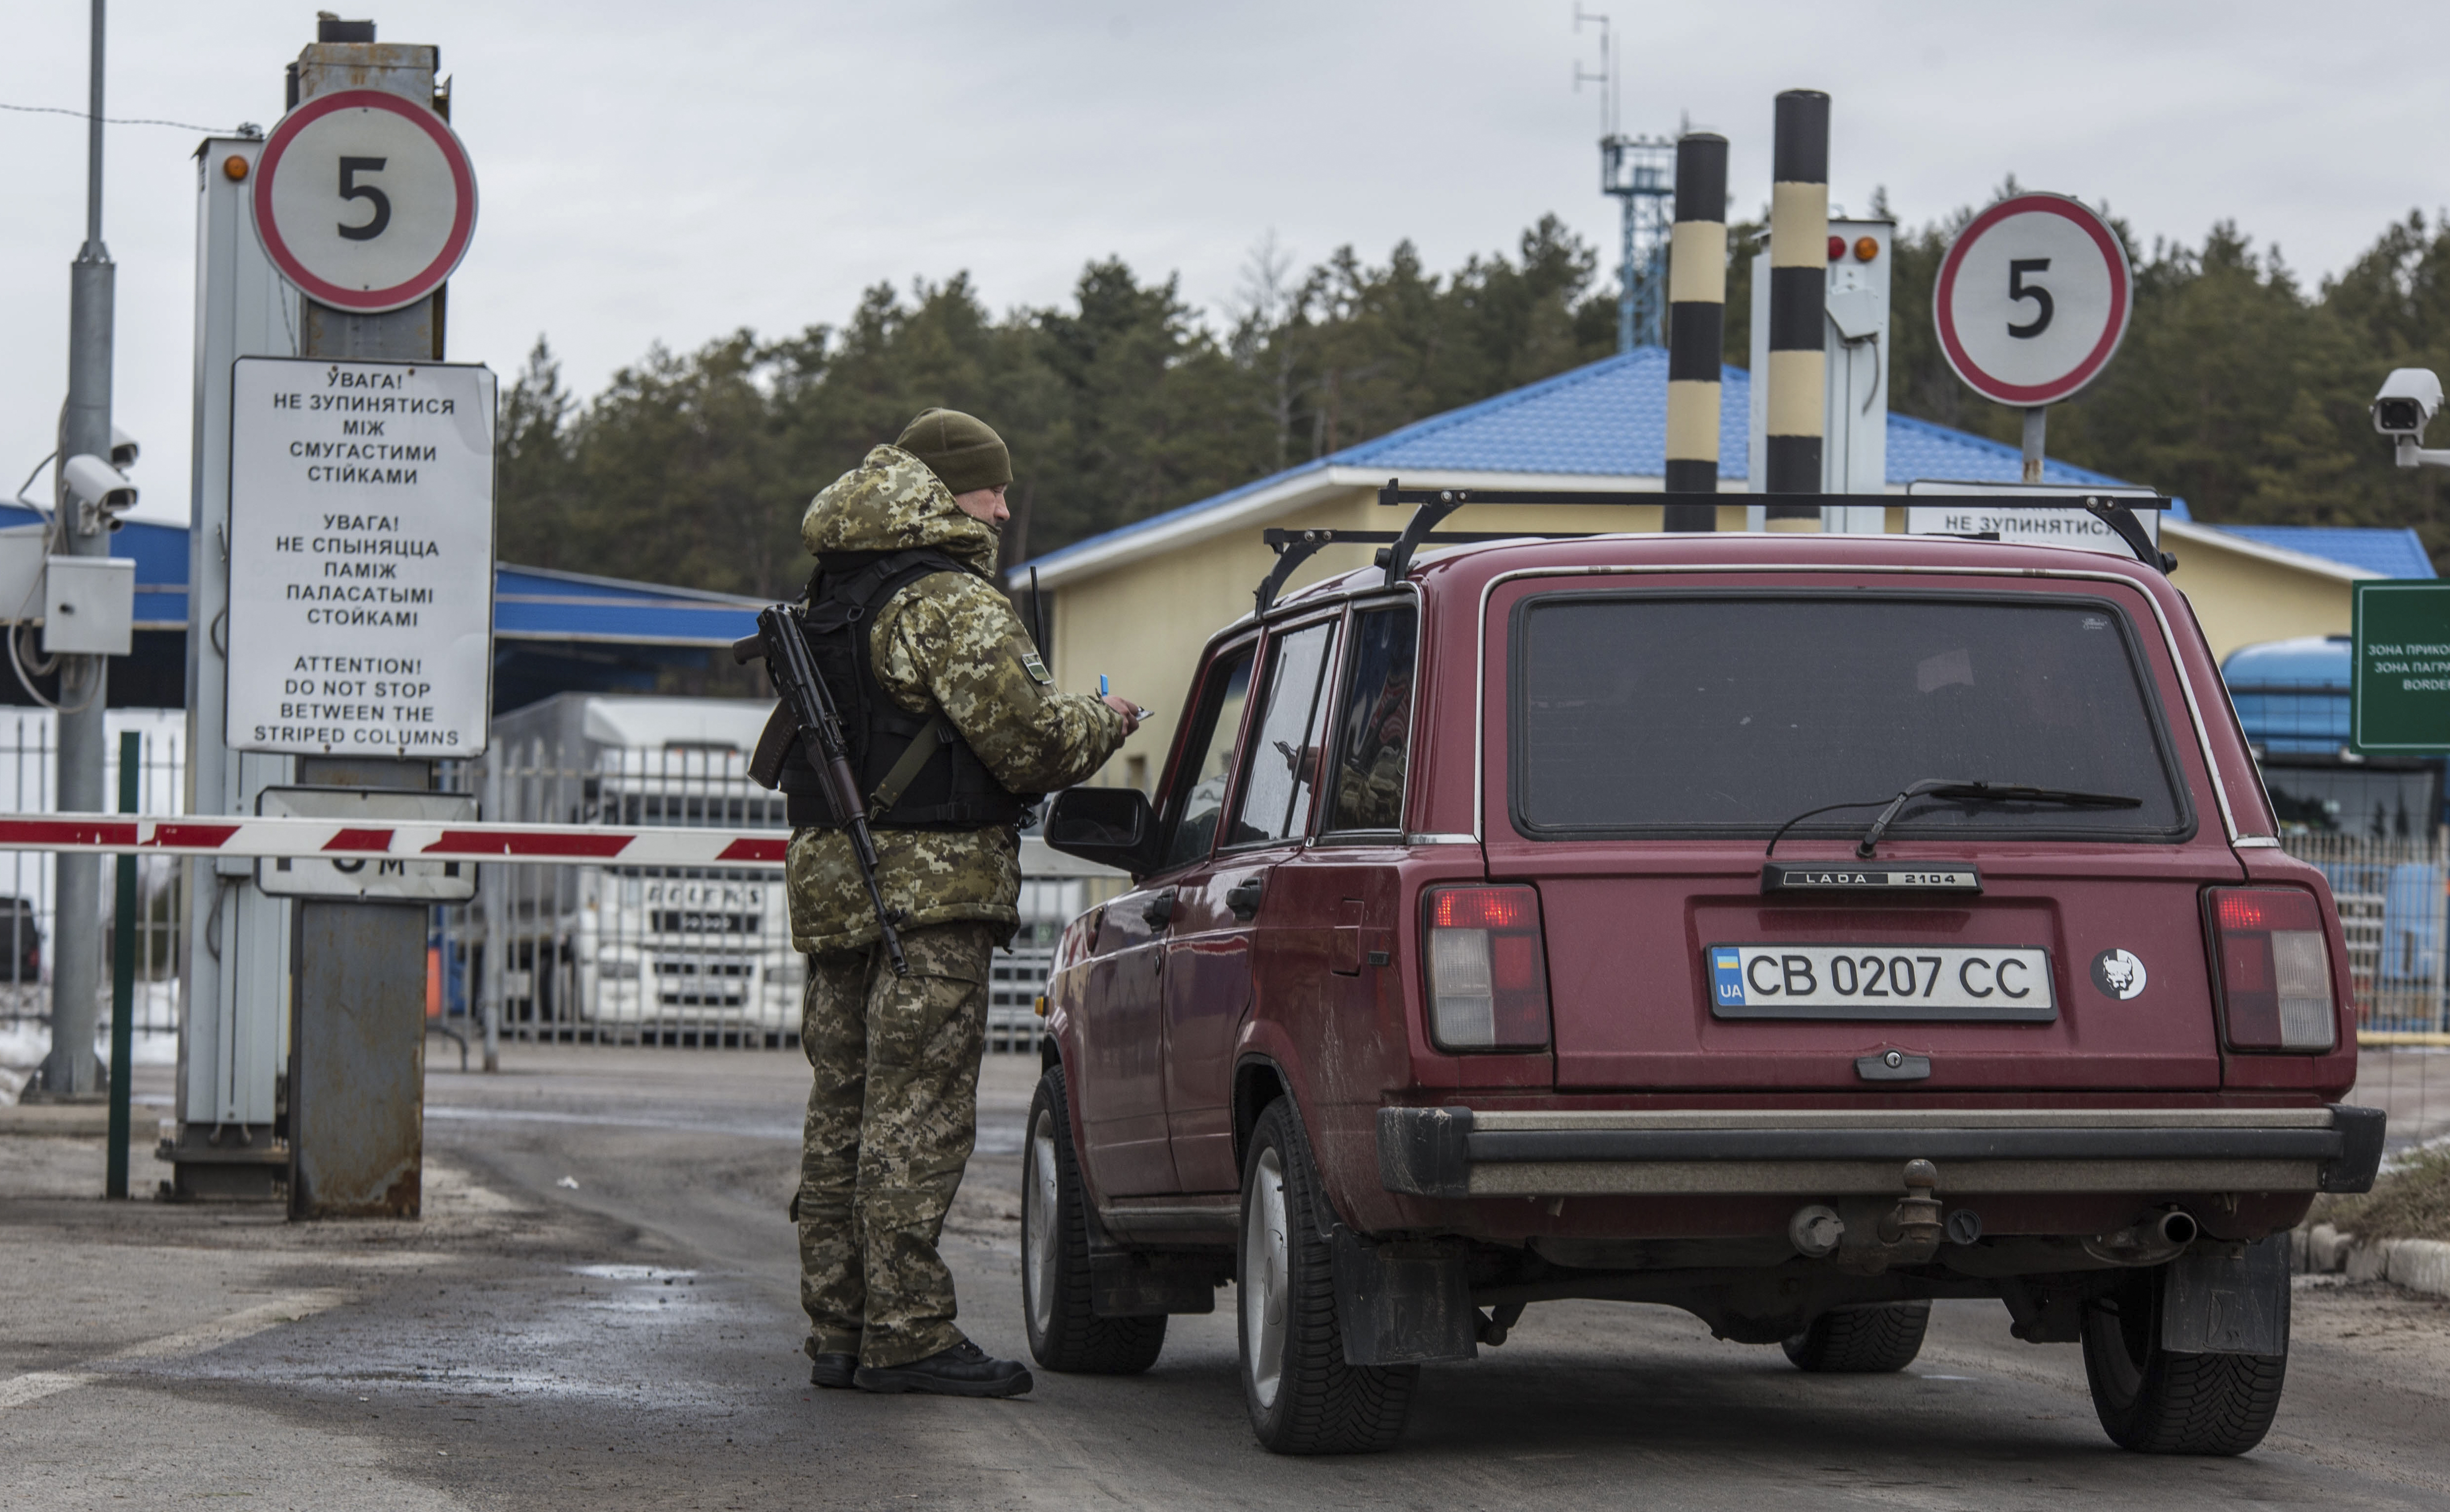 Граждане украины пересечение границы